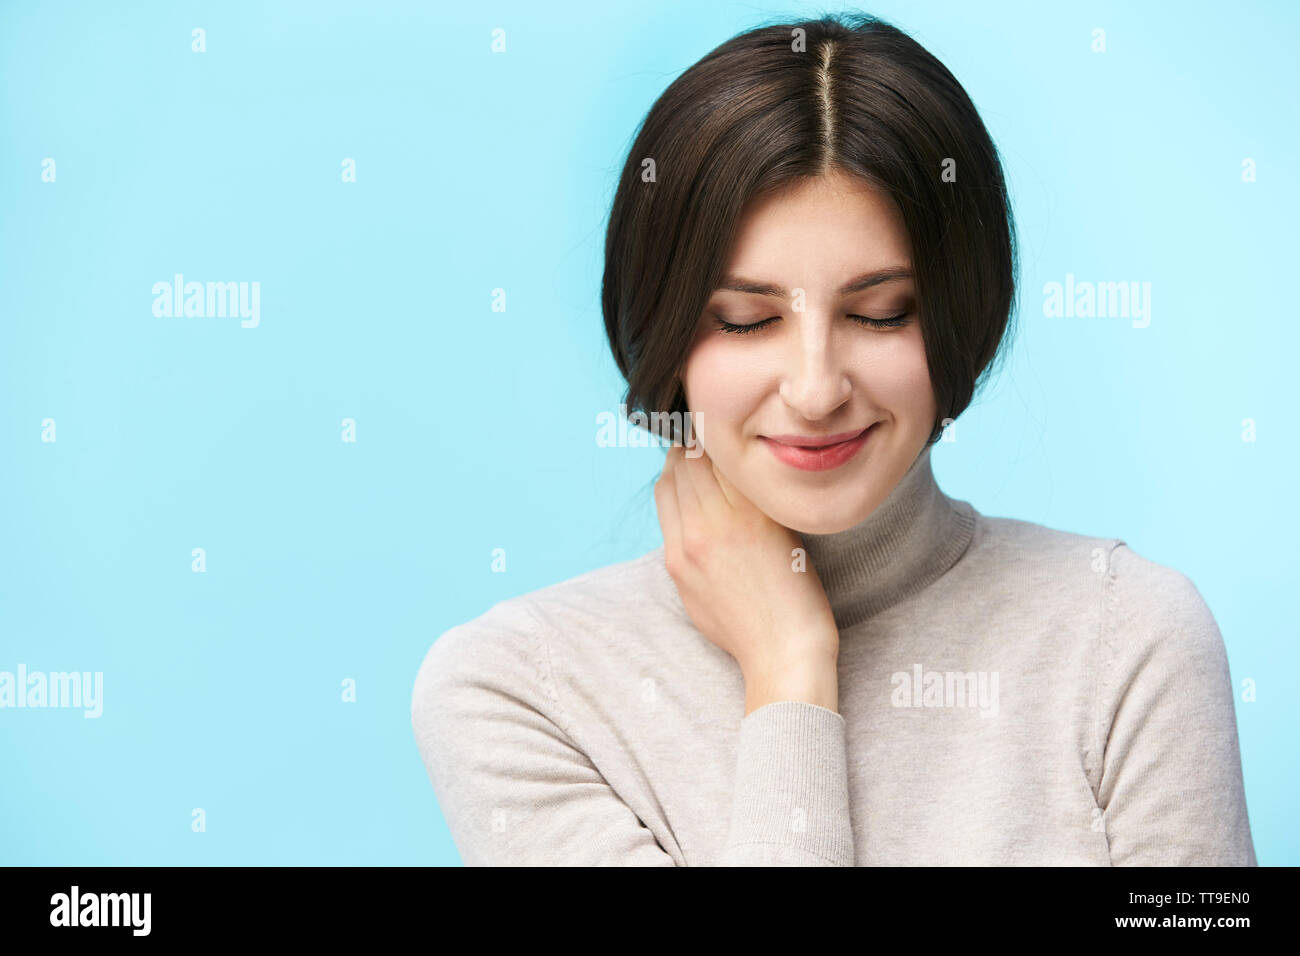 Porträt einer schönen jungen kaukasischen Frau, glücklich und lächelnd die Augen geschlossen, auf blauem Hintergrund isoliert Stockfoto